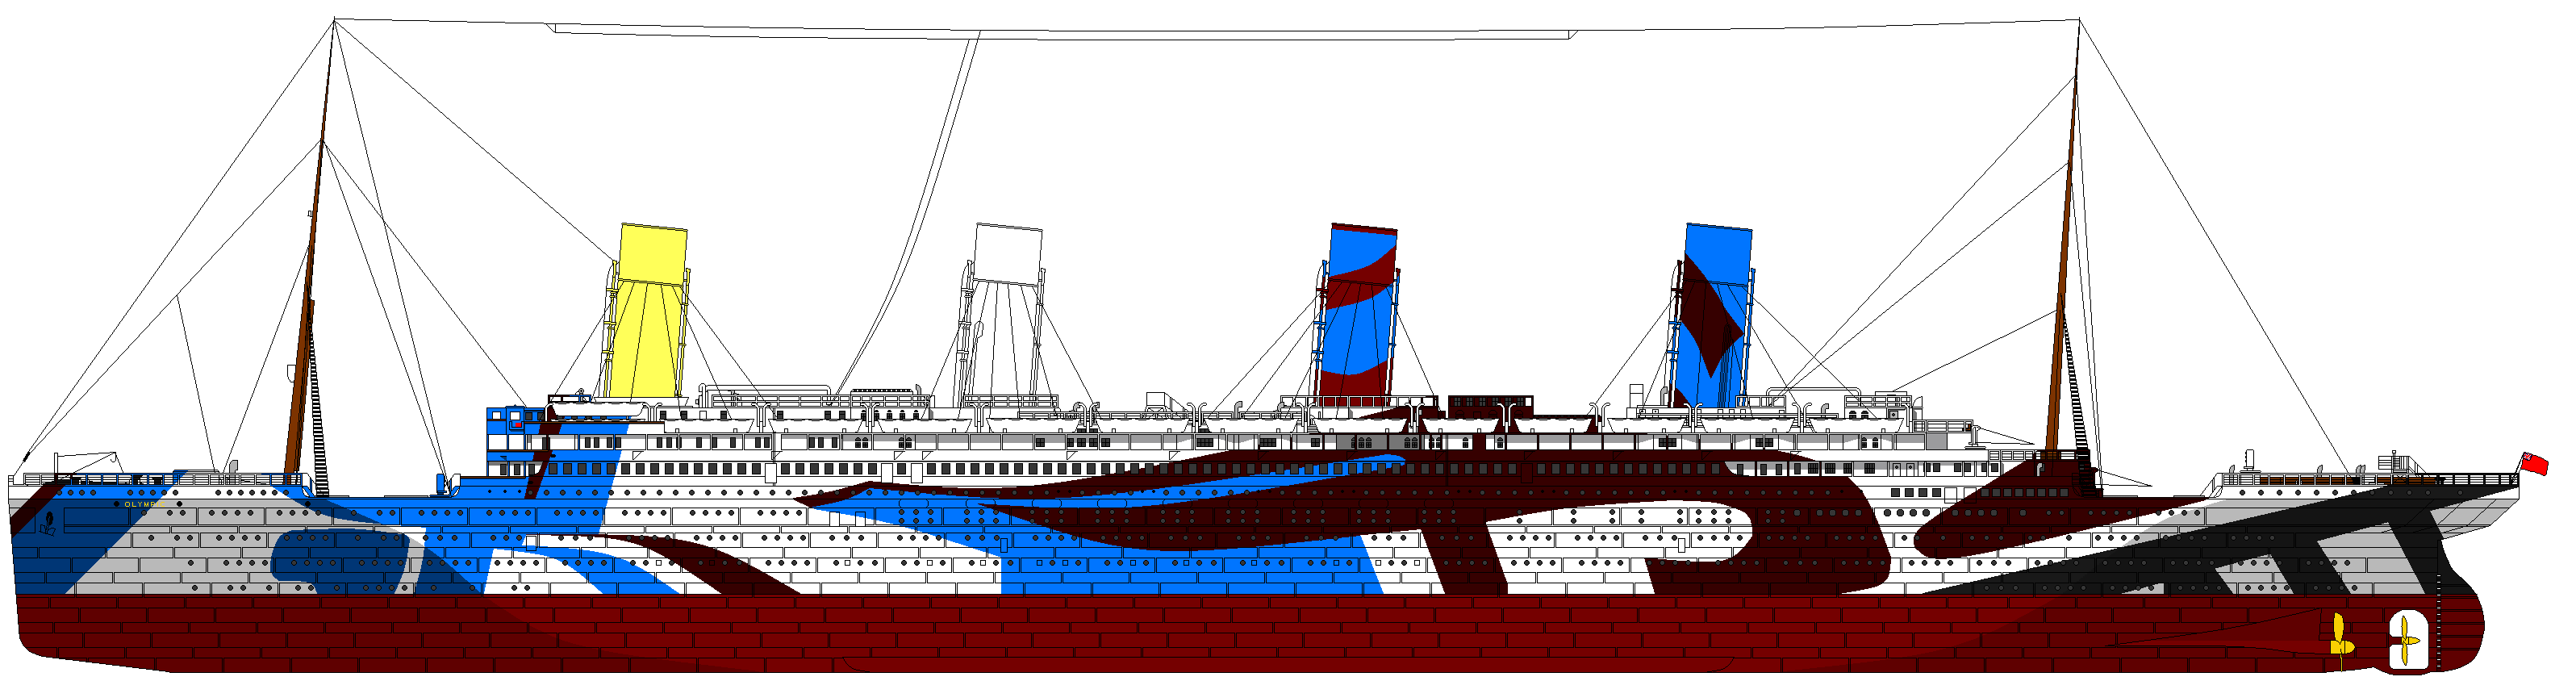 Мир олимпик. Олимпик Титаник Британик. Титаник Британик Олимпик Лузитания Мавритания. Раскраска Титаник Британик и Олимпик. Схема Титаника Британика.